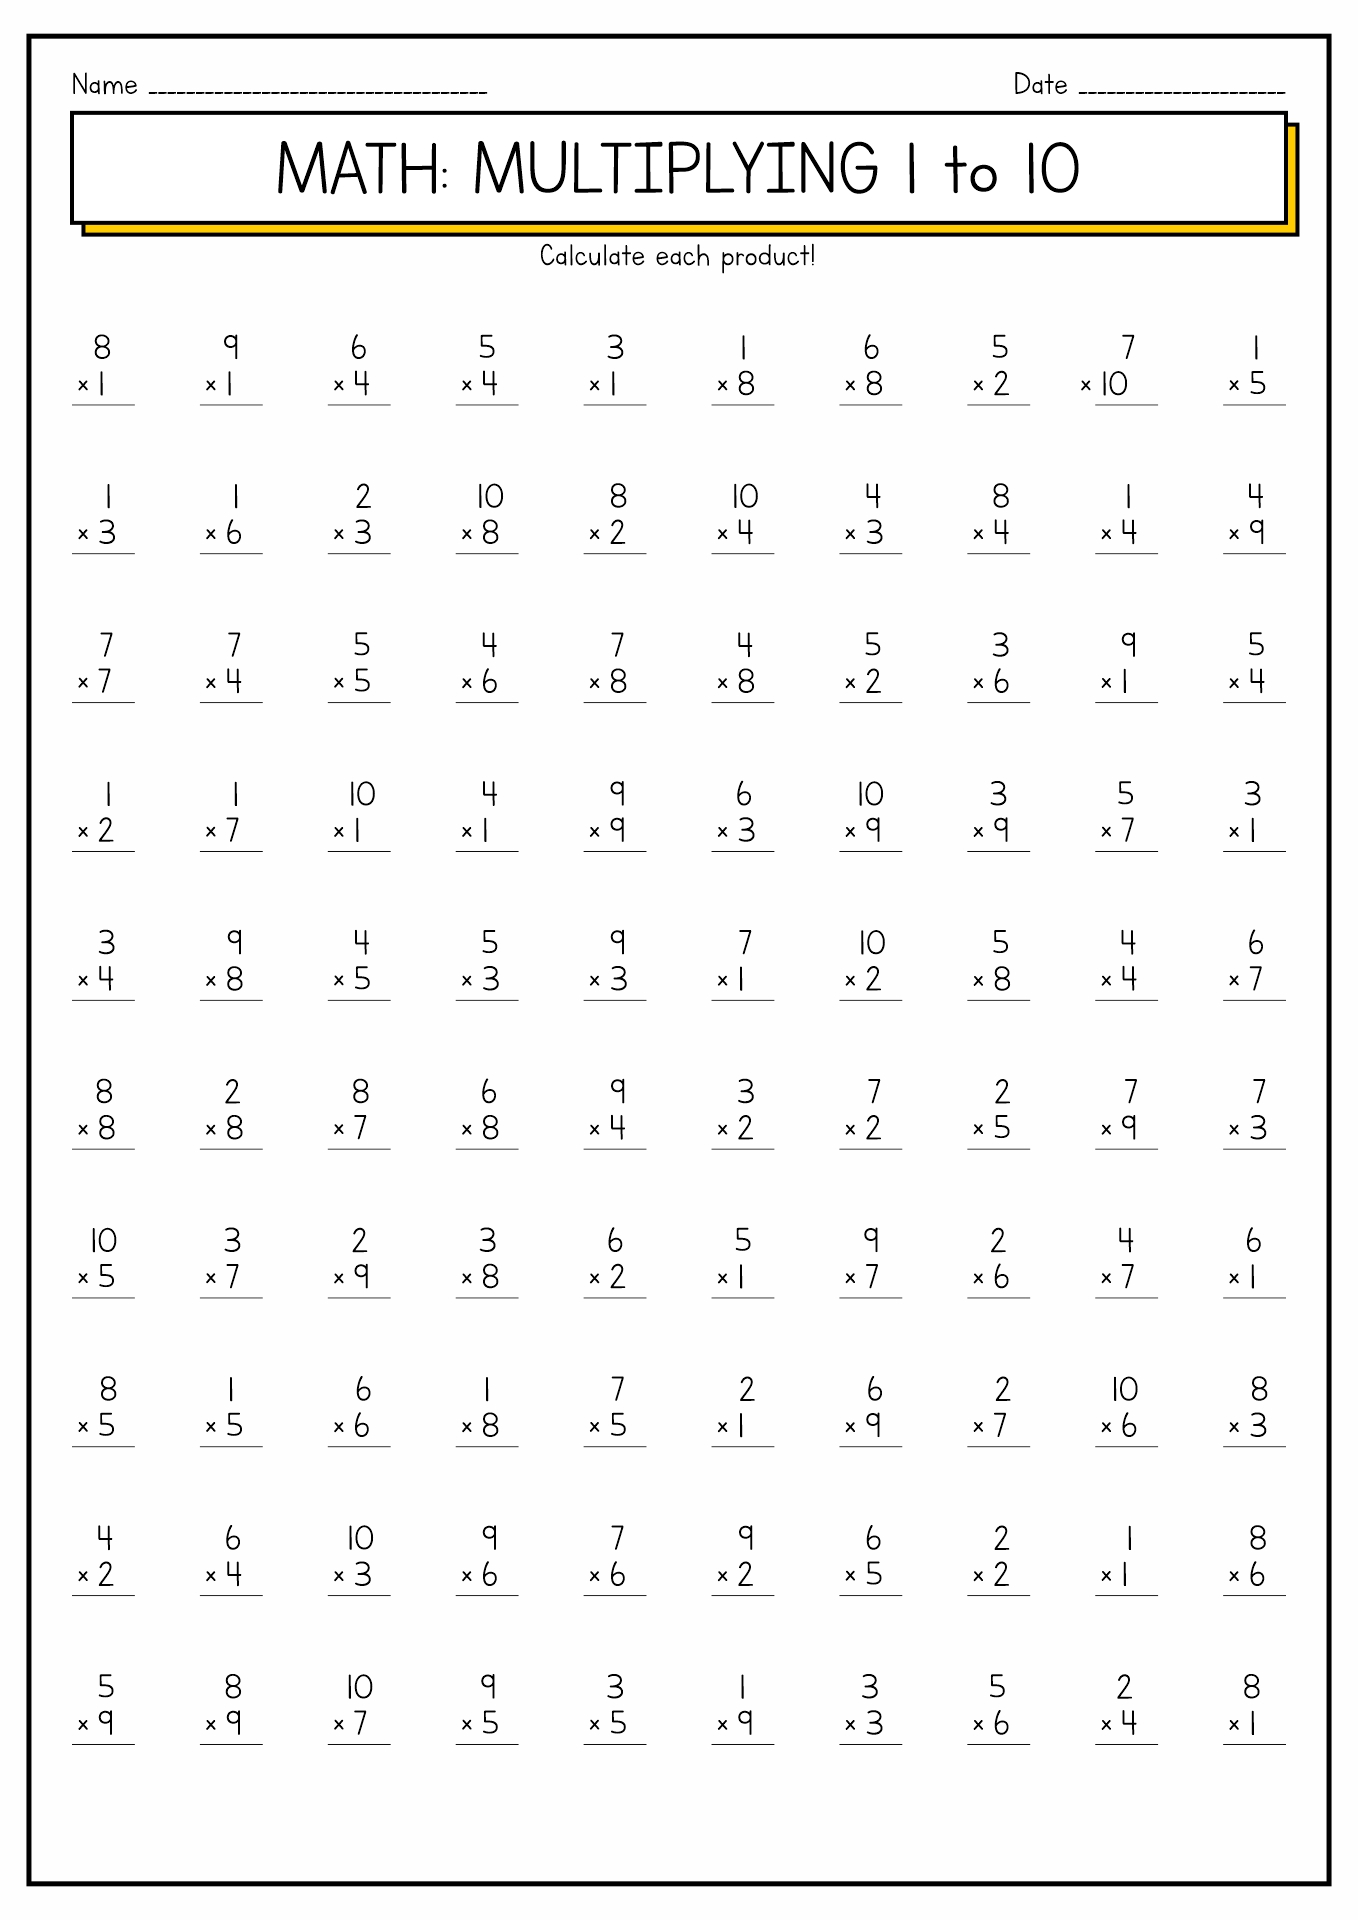 10-best-images-of-multiplication-worksheets-1-12-multiplication-worksheets-1-10-100-division